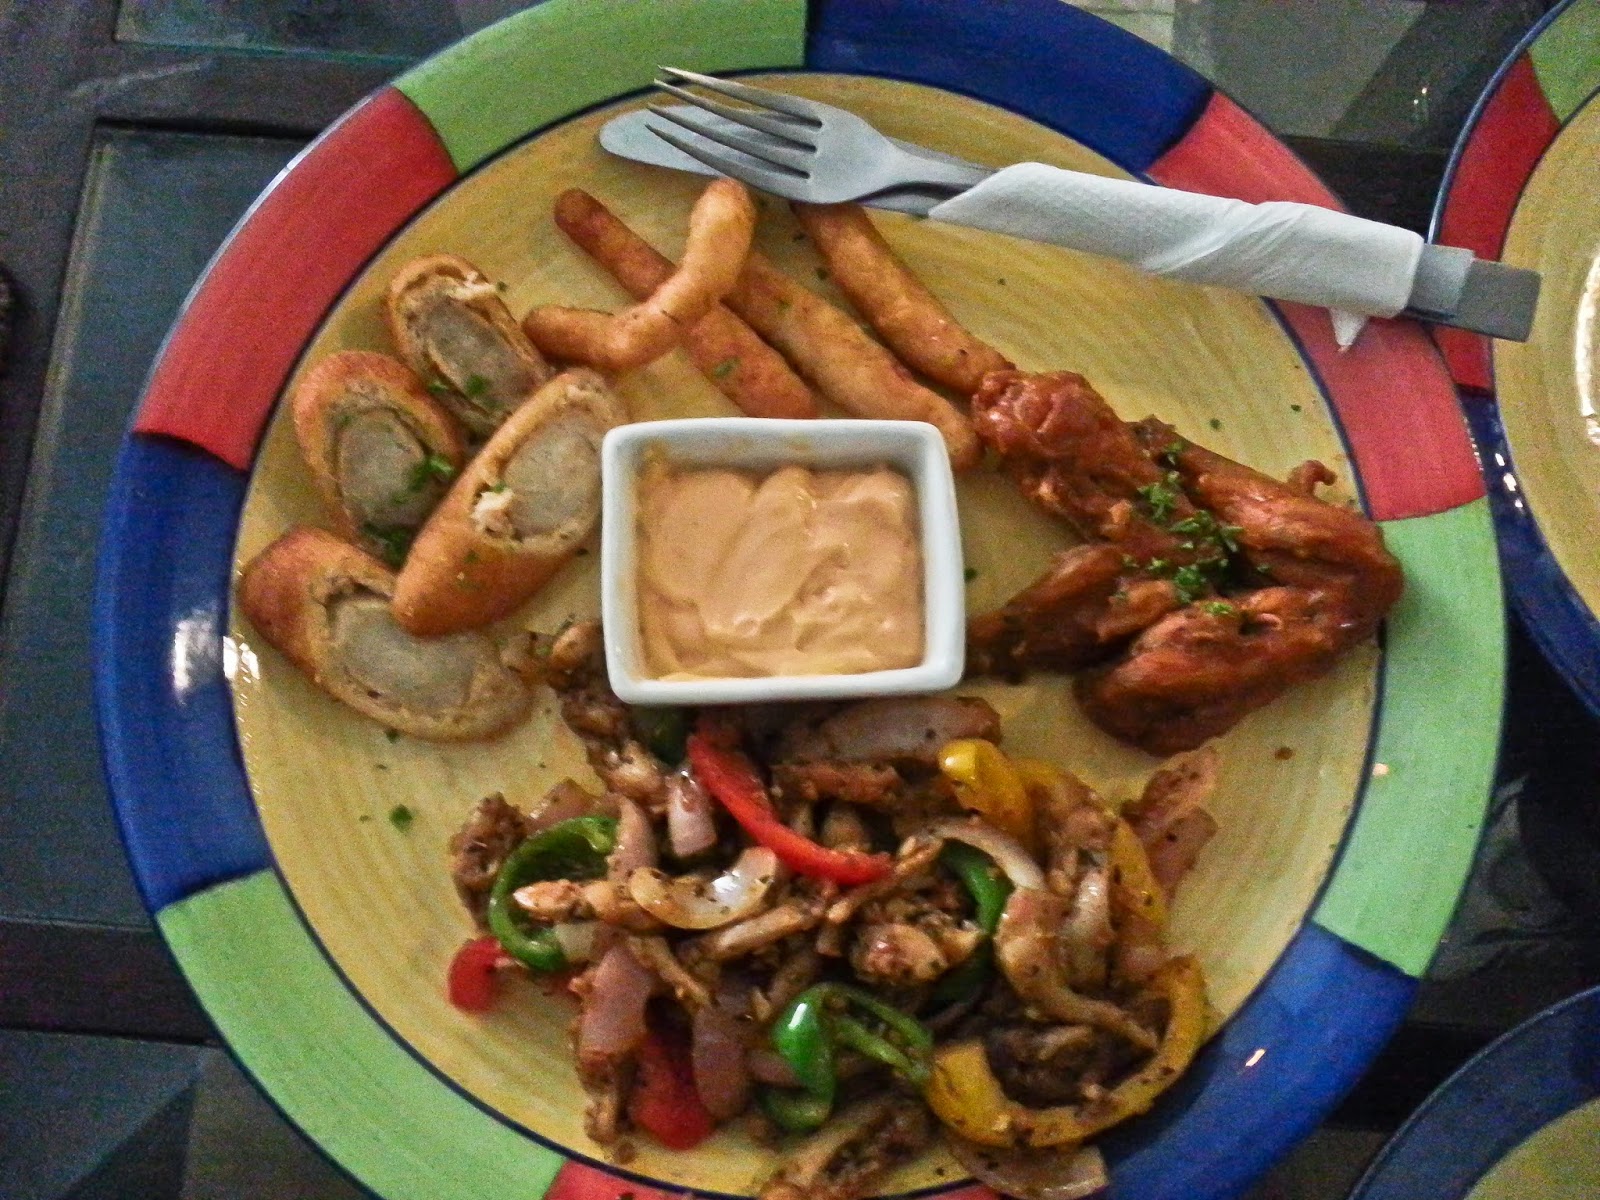 The Chicken Platter - Sausage Wonder, Chicken Fingers, BBQ Chicken Wings and Grilled Chicken Strips